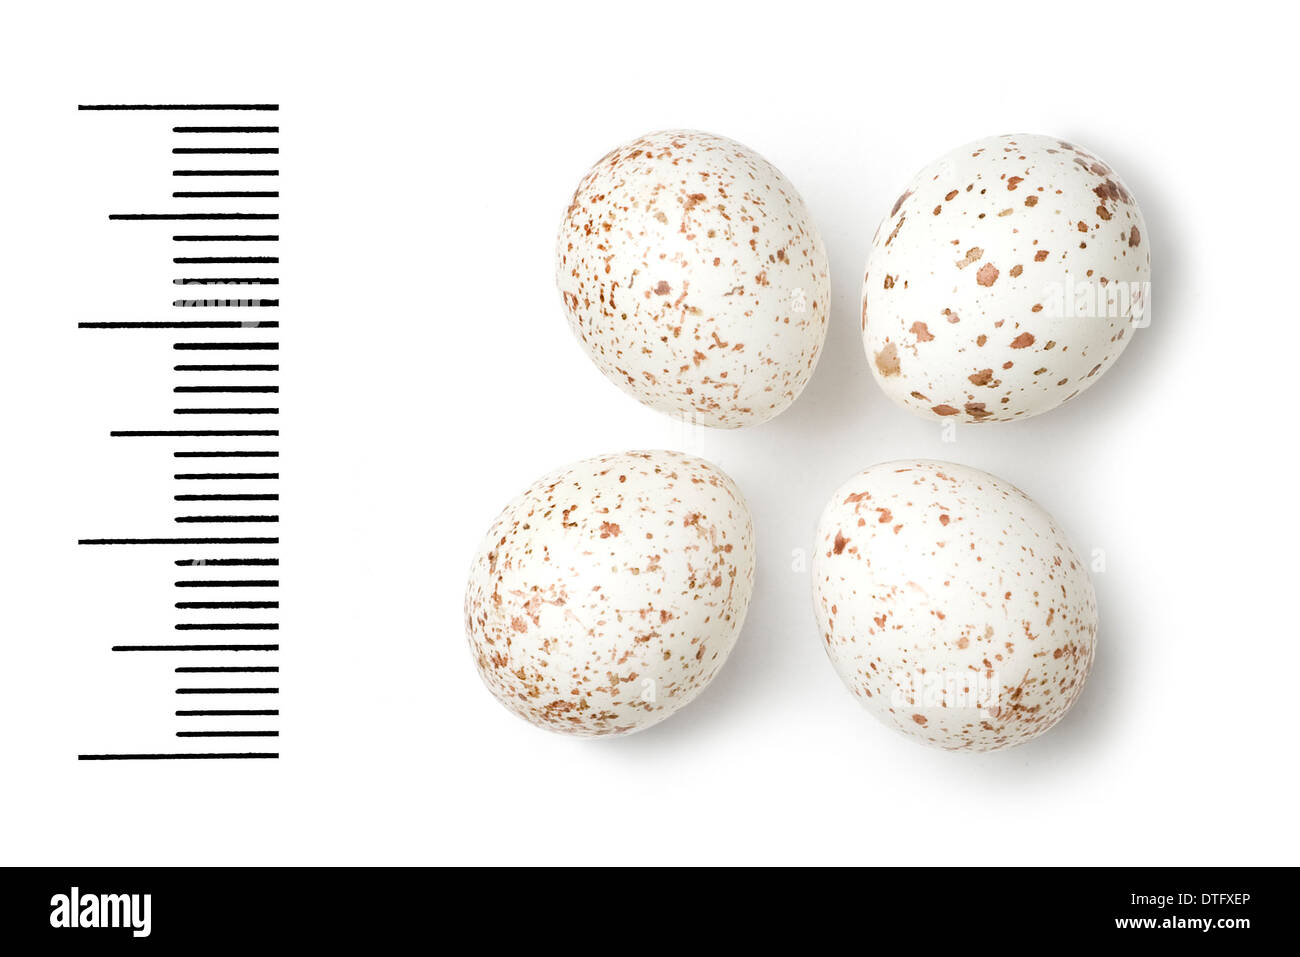 Phylloscopus ibericus, iberian chiffchaff eggs Stock Photo